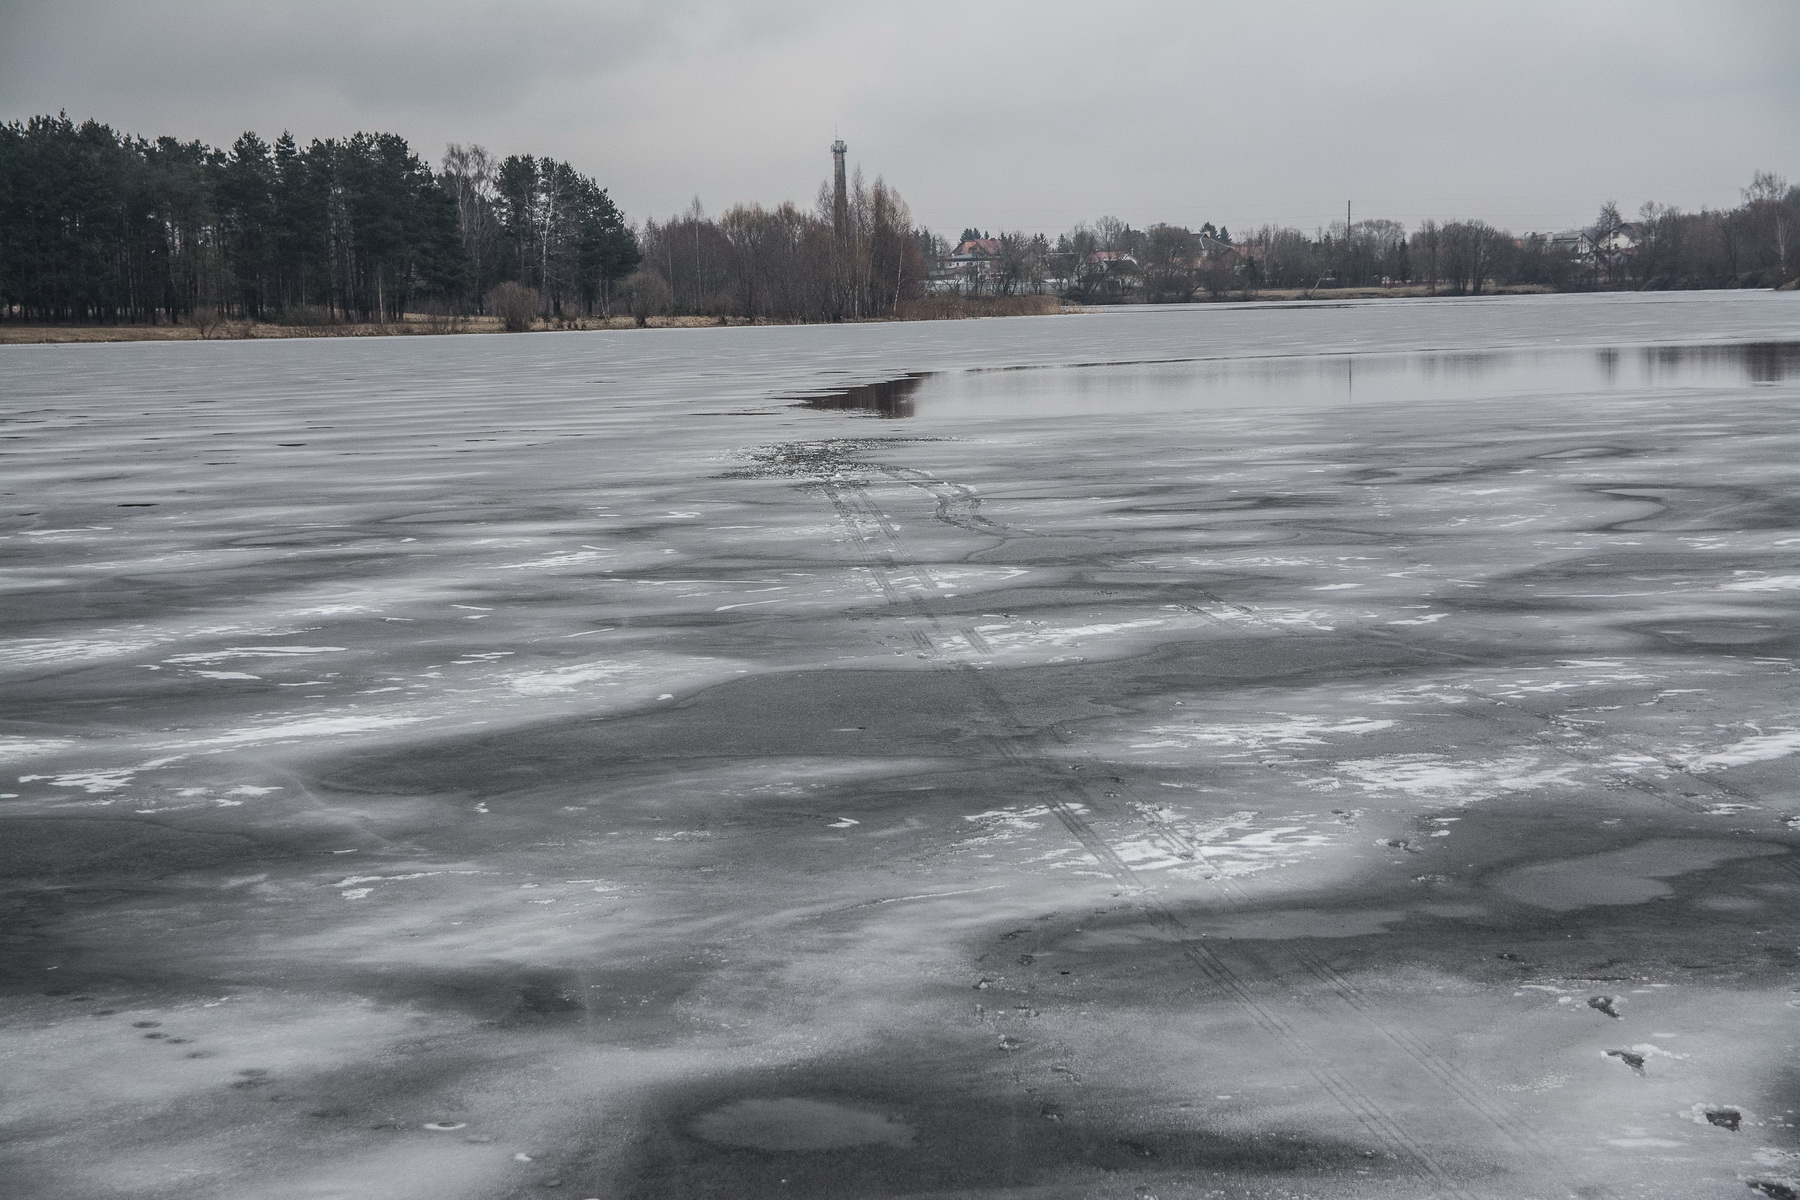 Nors oro sąlygos jau nebepalankios poledinei žūklei, žvejai nepaiso perspėjimų apie pavojingą ledą ir vis dar rizikuoja.